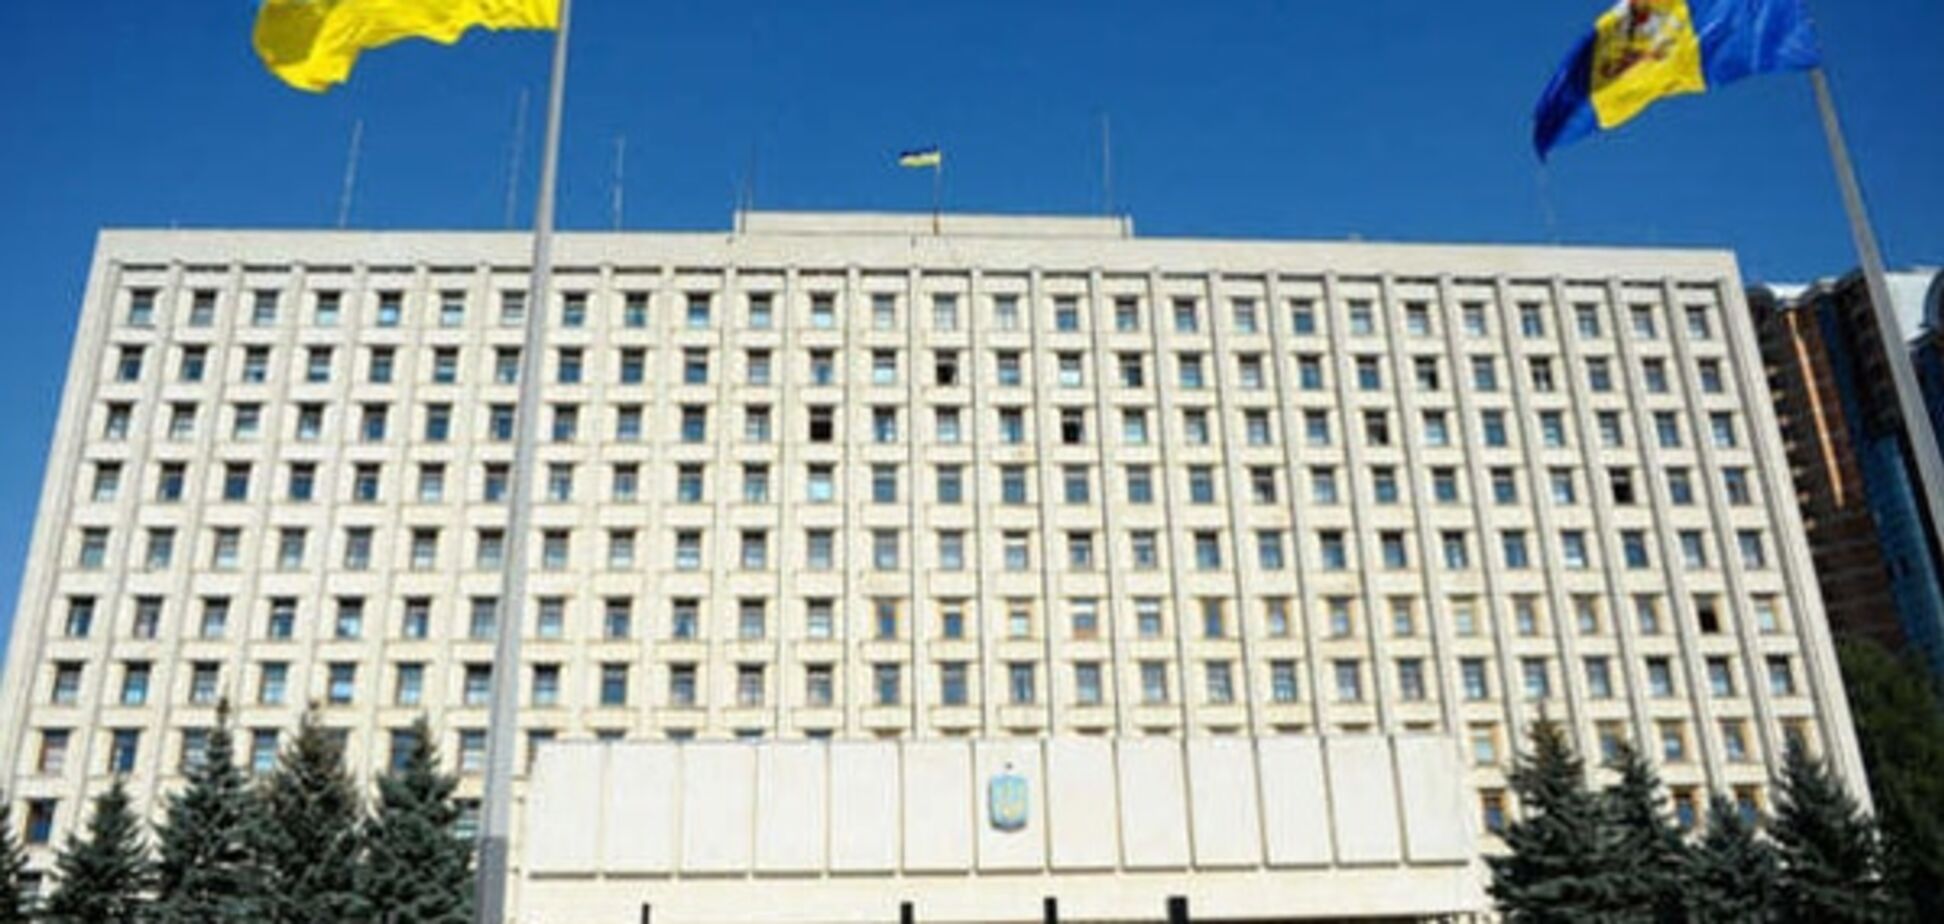 ЦВК готує рішення про скасування другого туру виборів у Павлограді - джерело